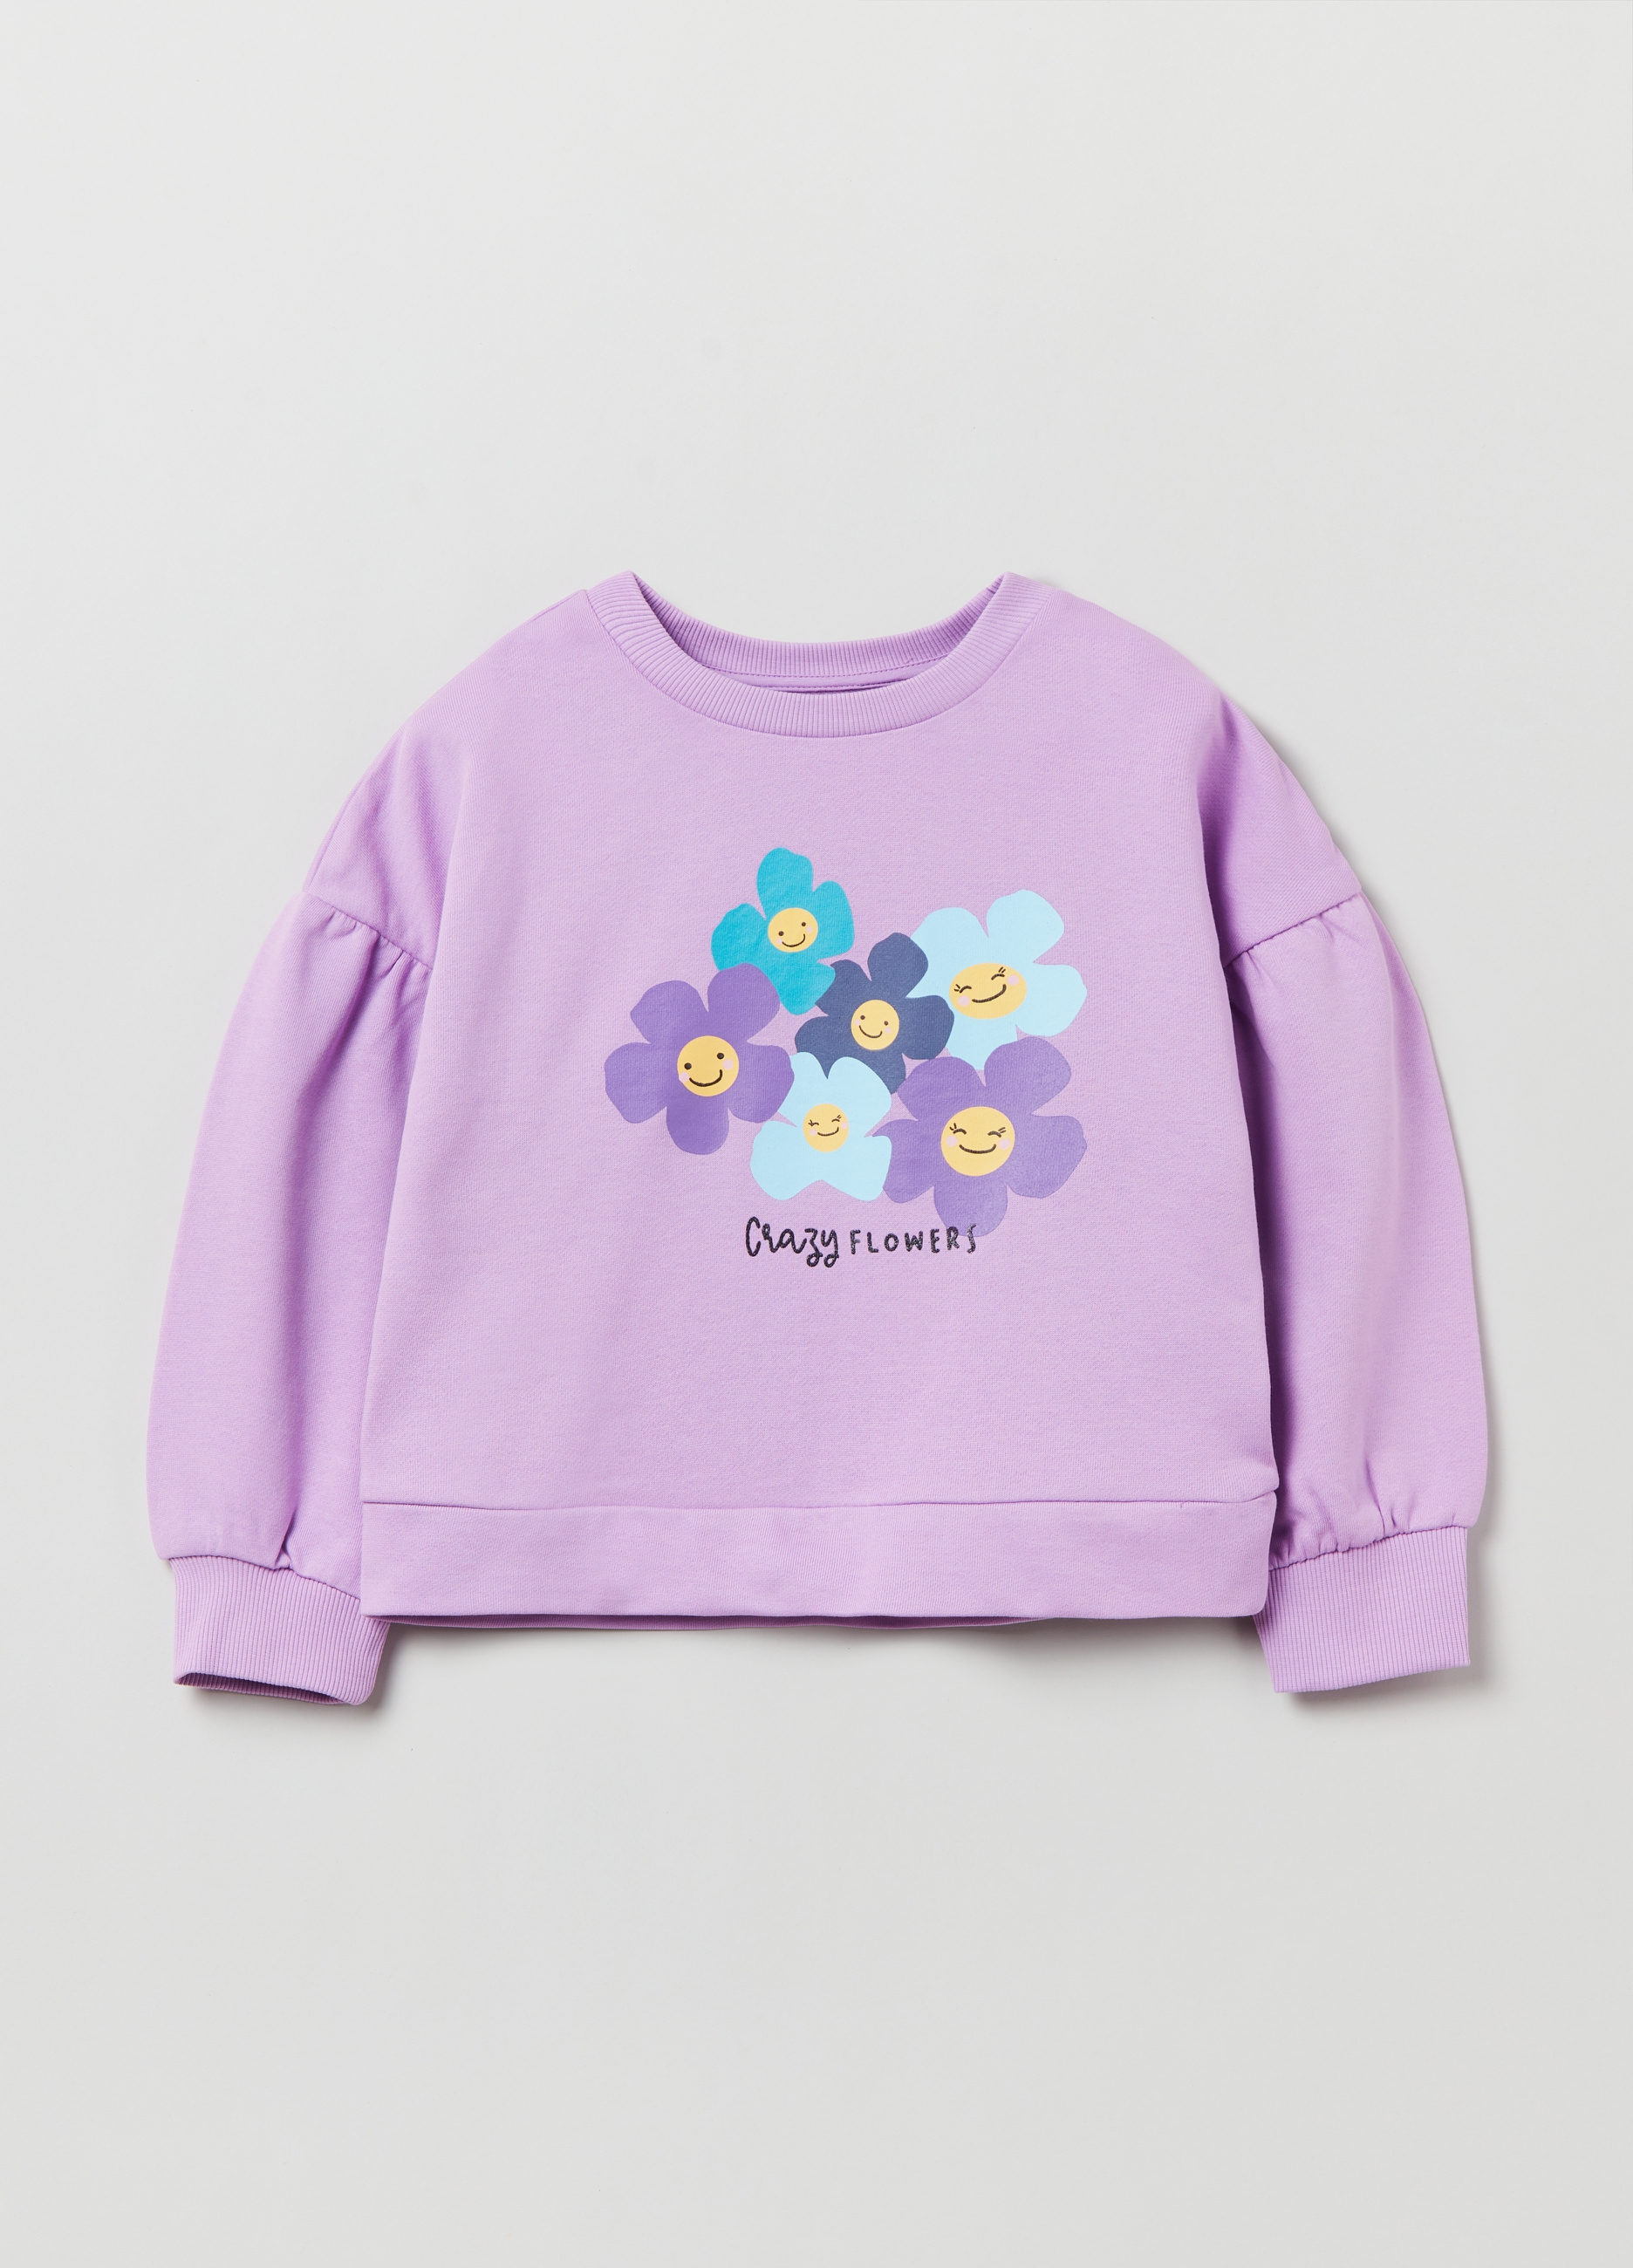 Фуфайка OVS для девочек, фиолетовая, 7-8 лет, 1893089 комплект трикотажный для девочек фуфайка футболка бриджи